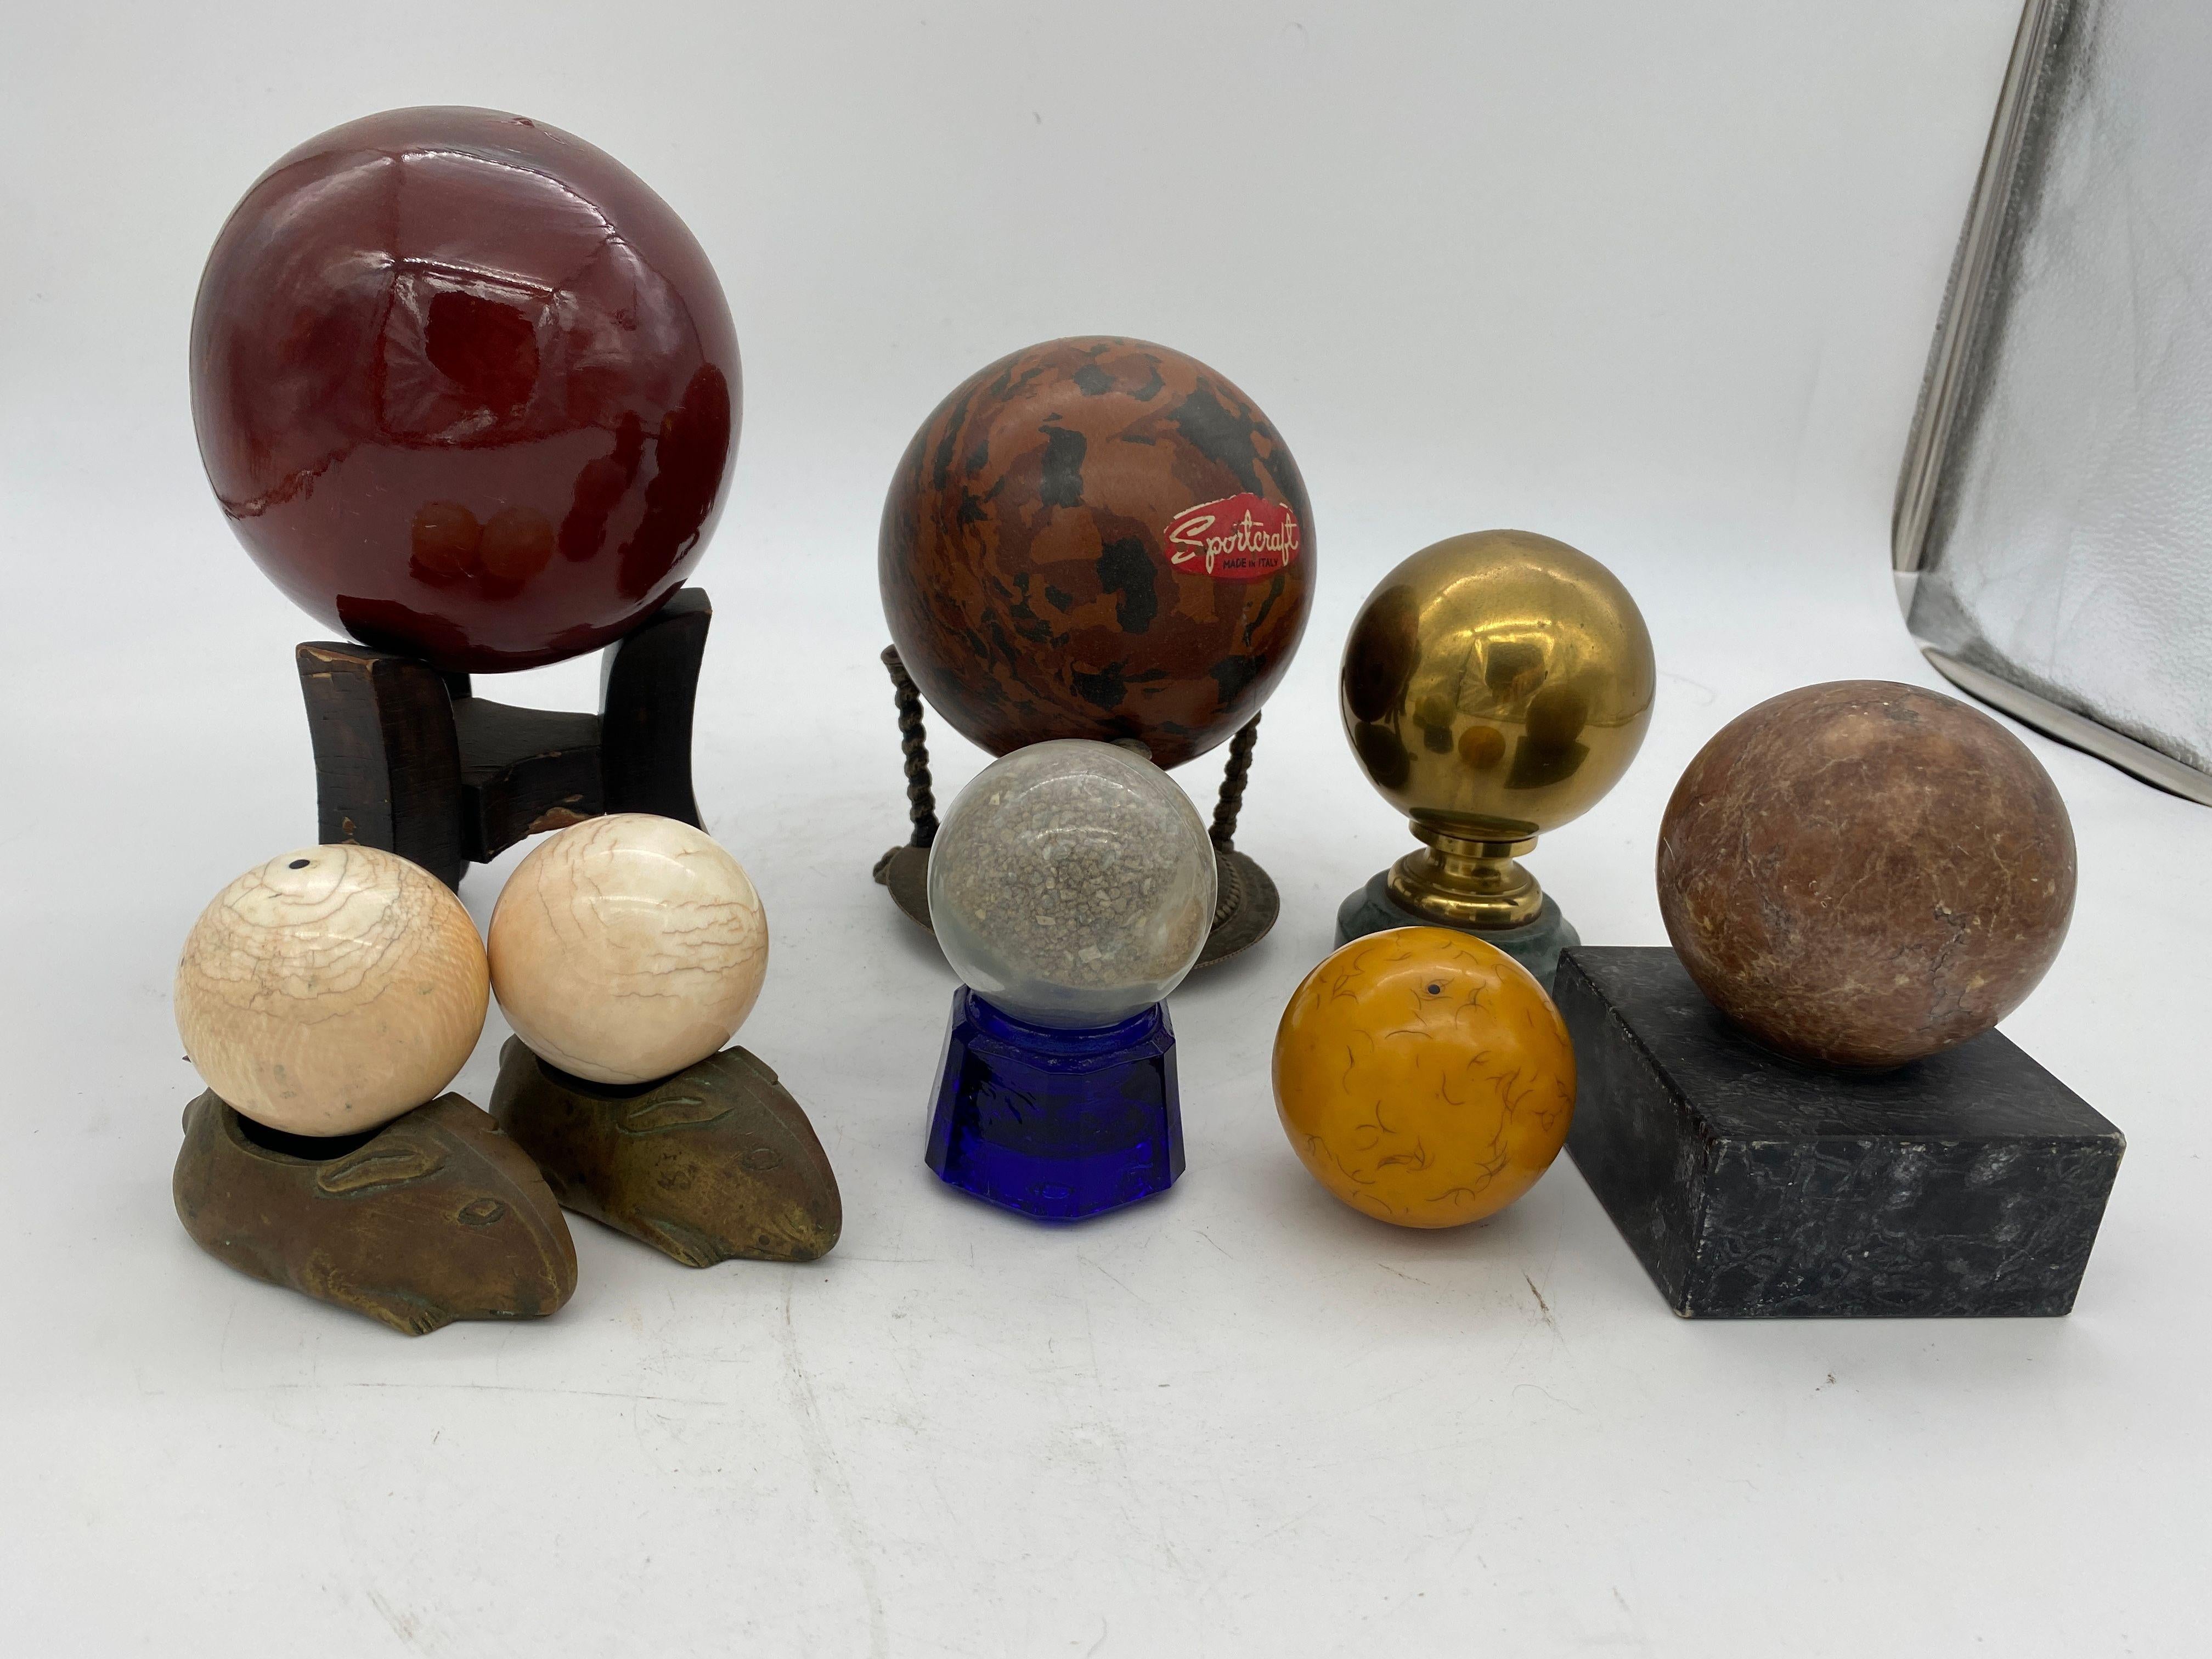 Kollektion von 8 Kugeln, davon 4 aus Marmor und Stein, 2 aus Harz, 1 aus Keramik und eine aus Messing. Sieben werden mit Sockeln geliefert.

Der größte ist 8